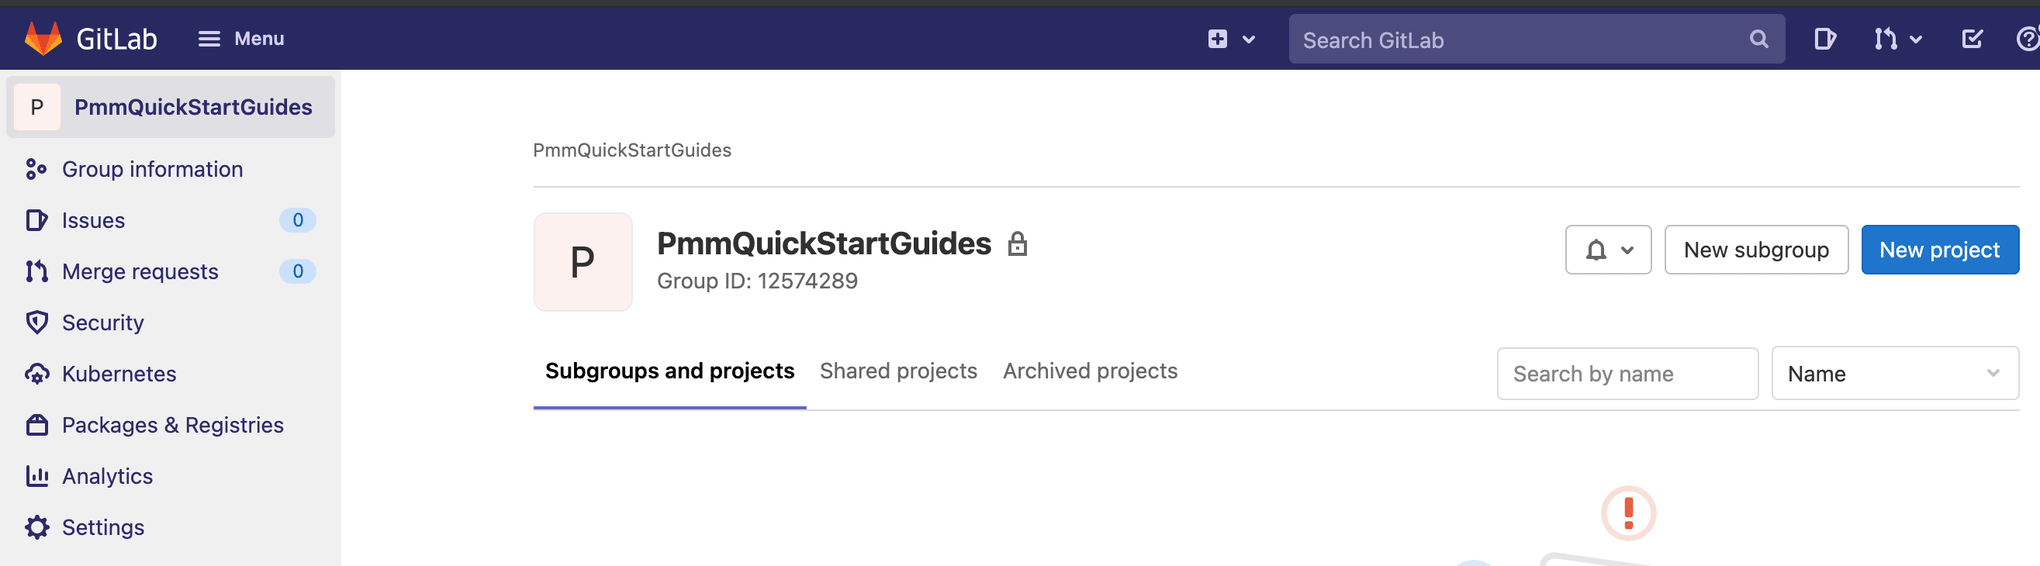 Como navegar para criar um "Novo projeto" no GitLab